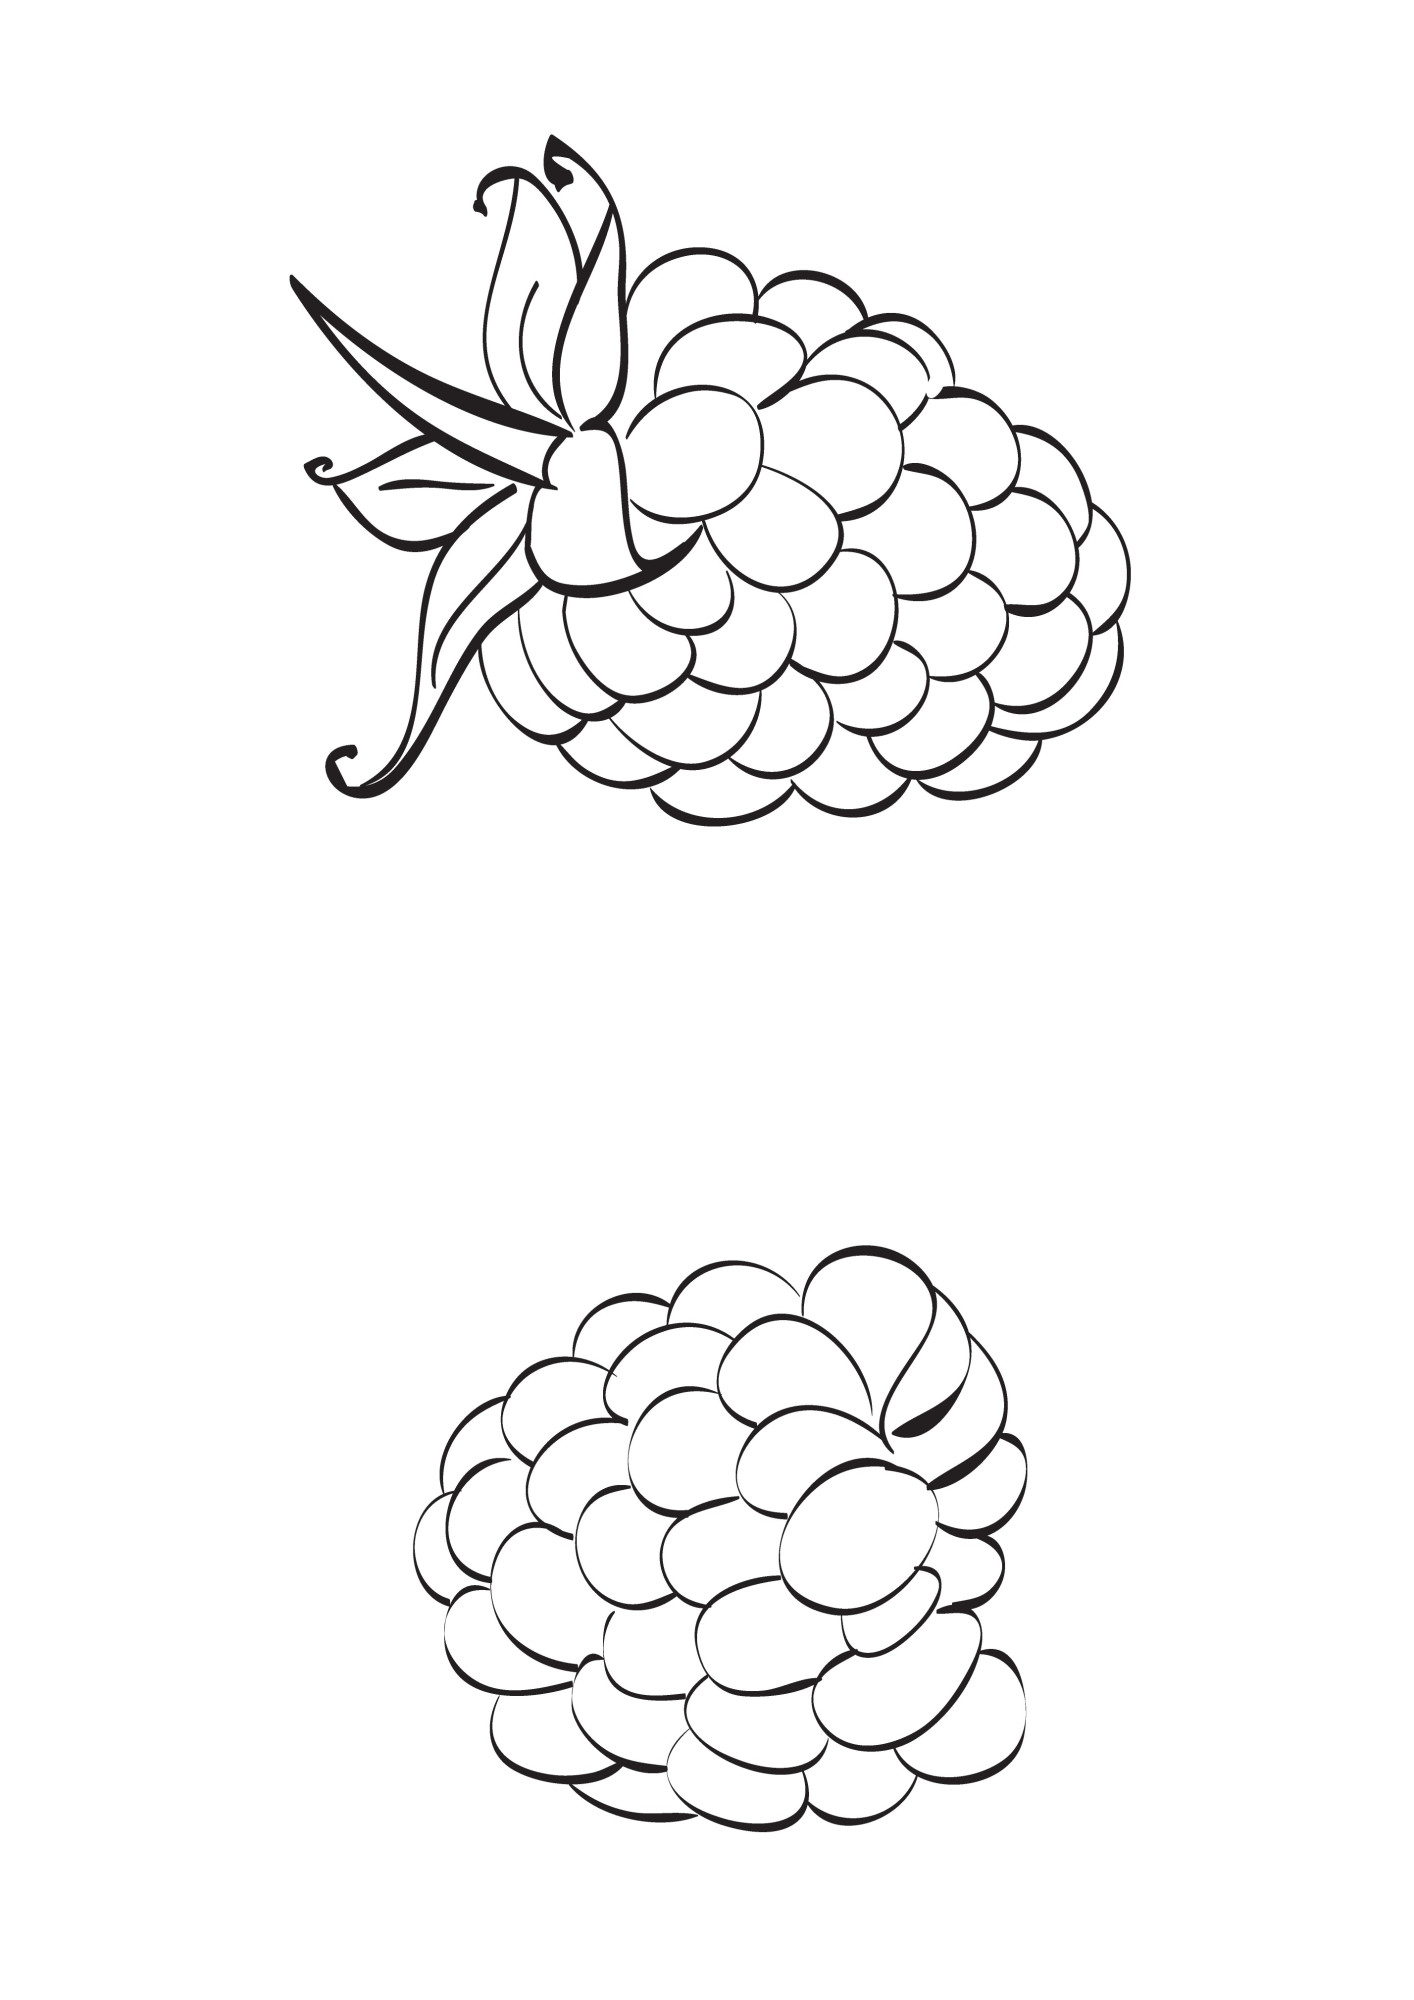 Раскраска для детей: спелые ягоды малины